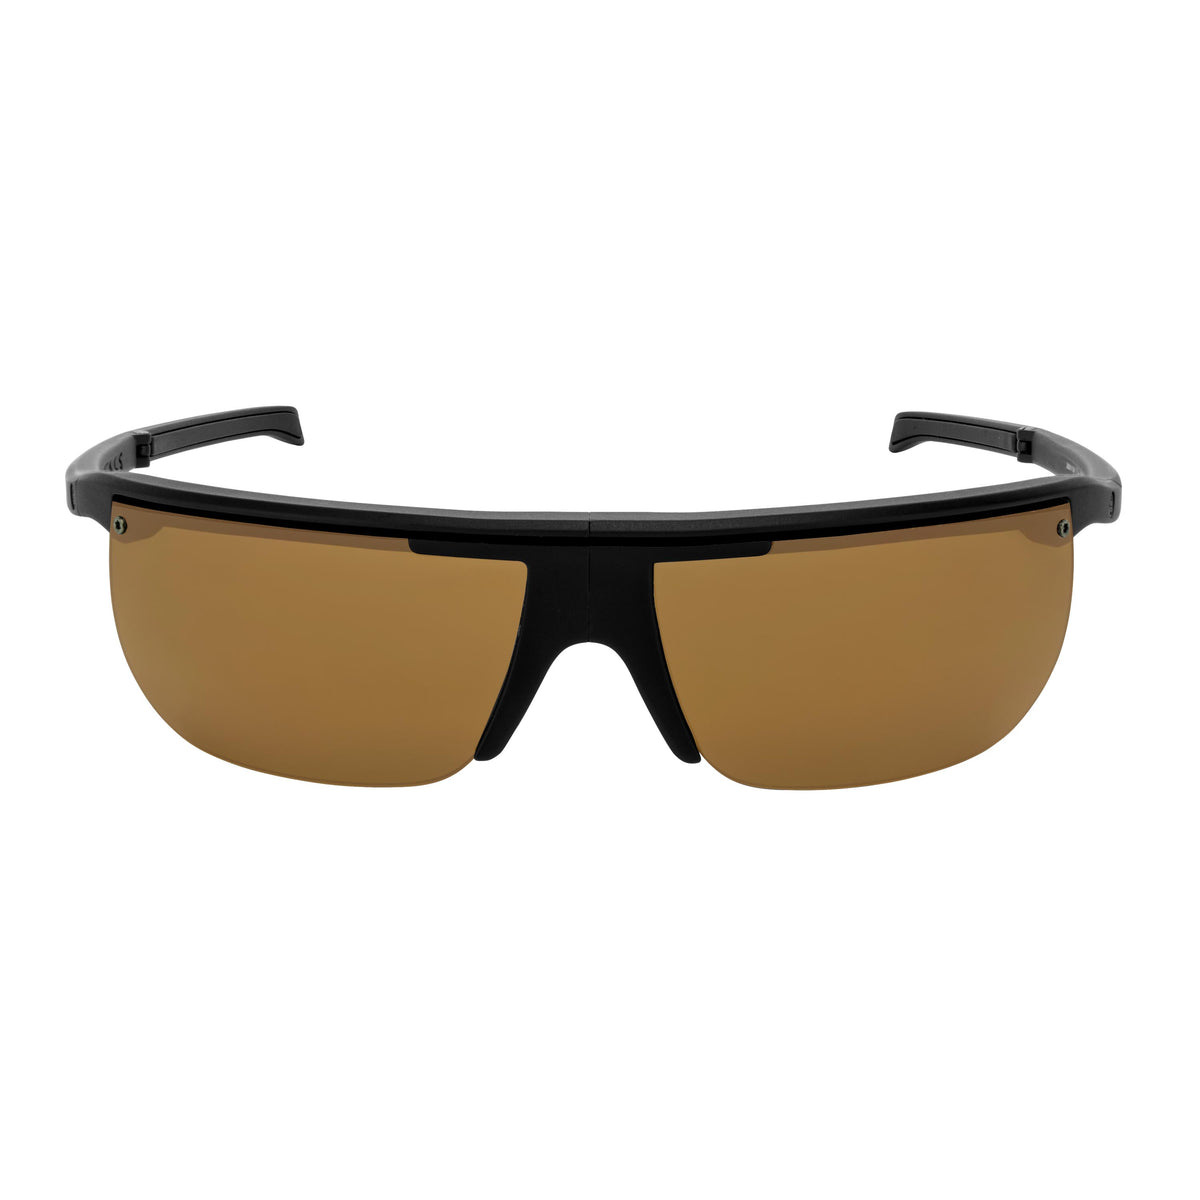 Popticals, Premium Compact Sunglasses, PopArt, 010030-BMNP, Polarized Sunglasses, Matte Black Frame, Brown Lenses, Front Tilt View